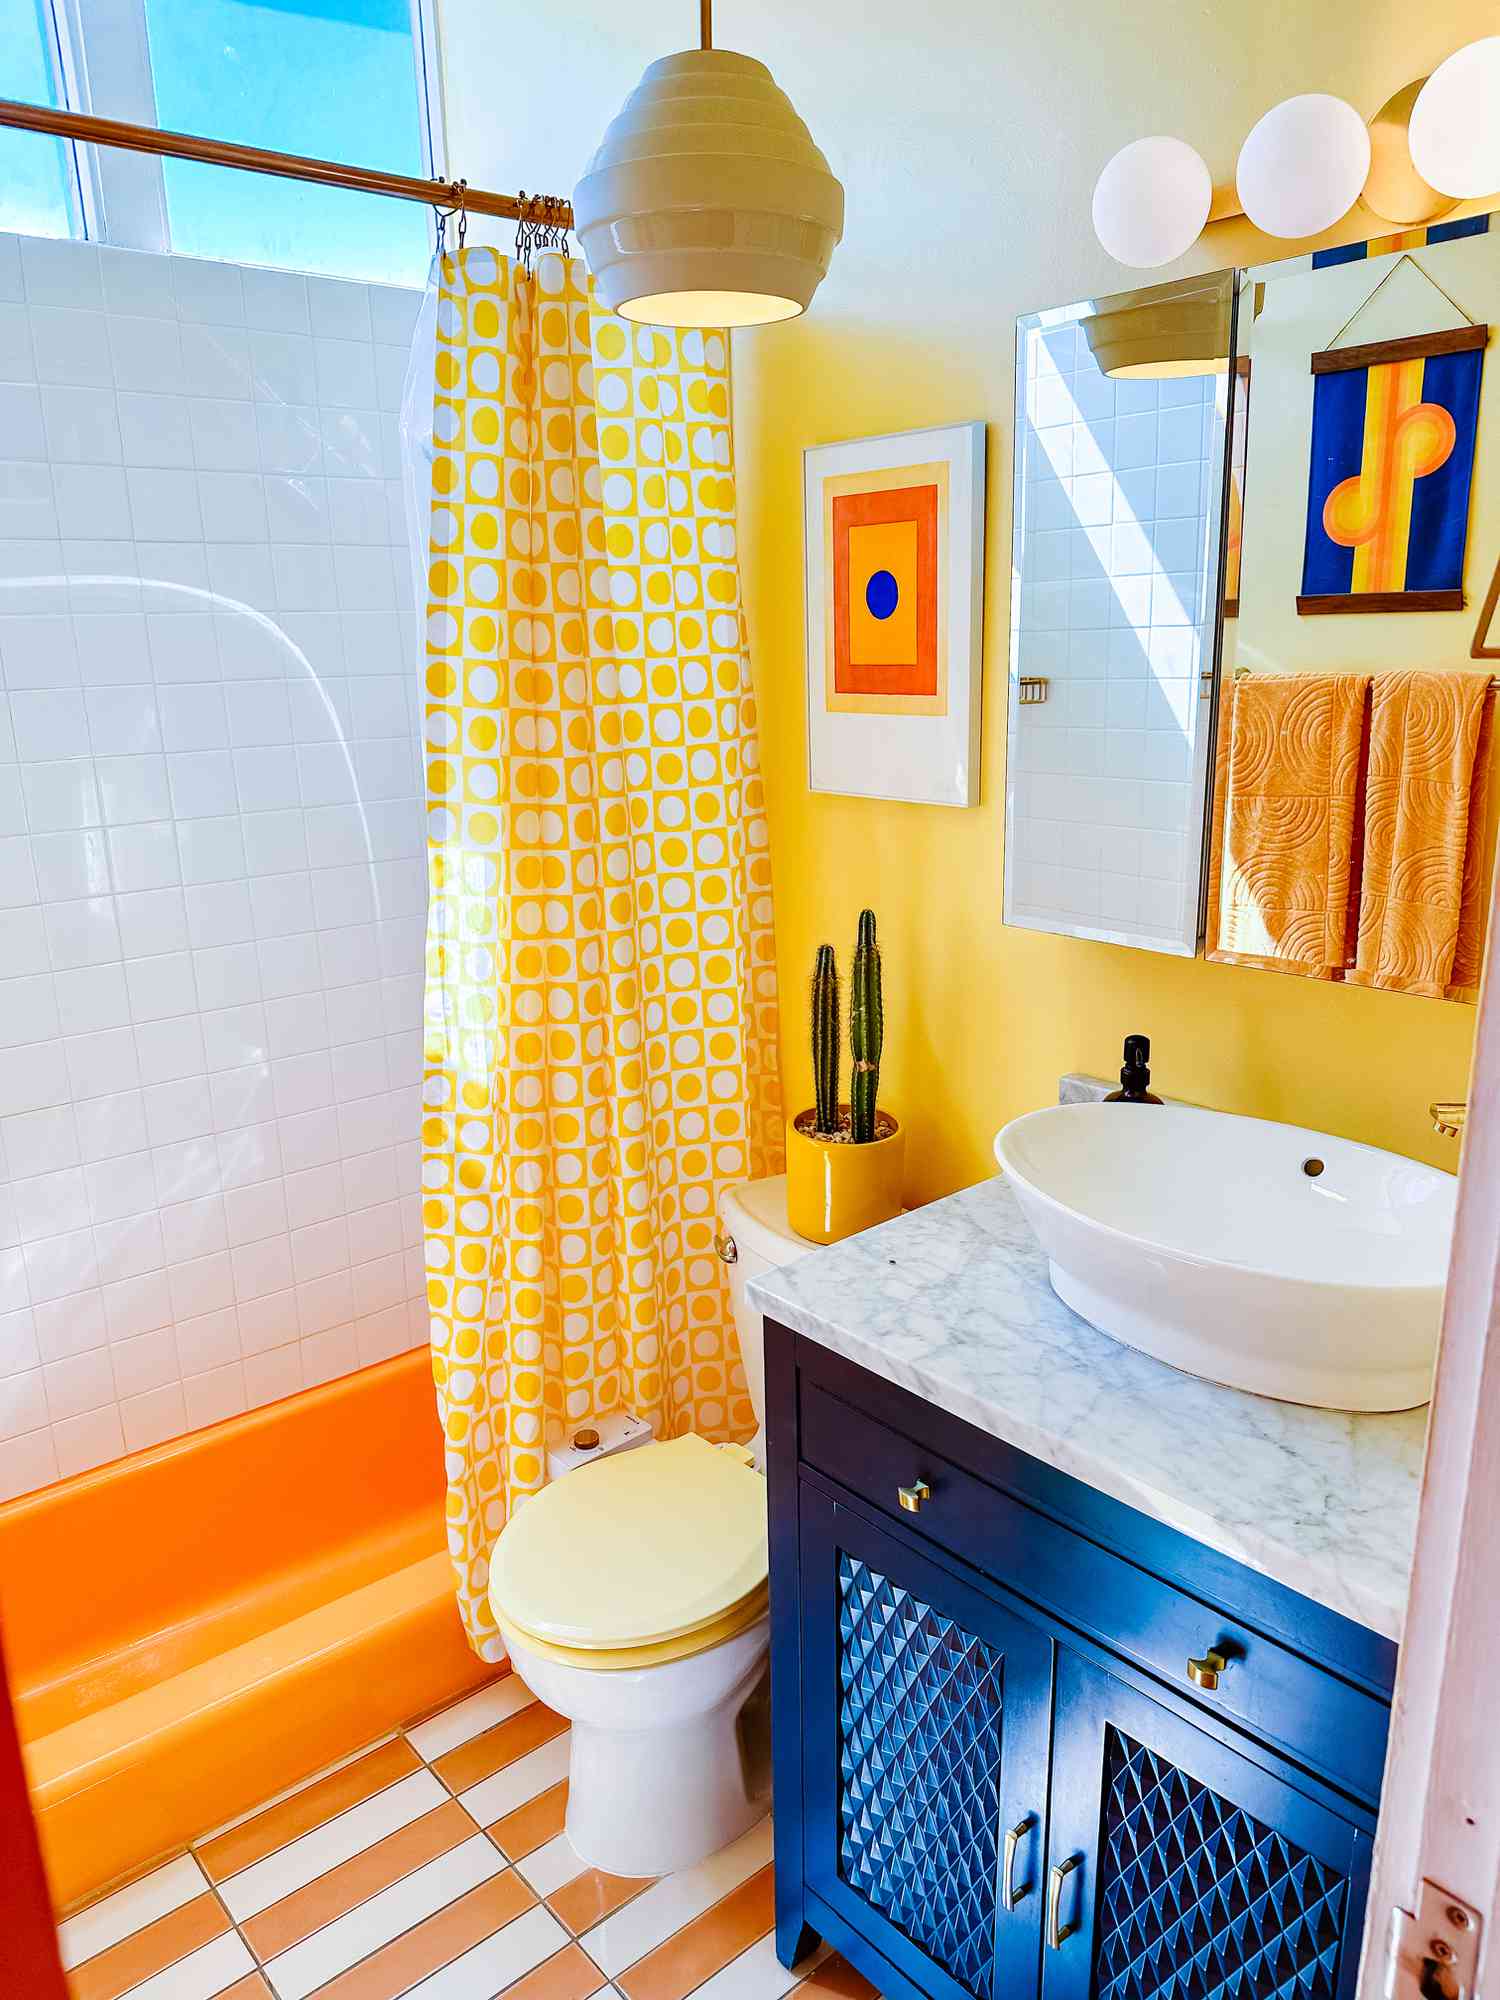 baño azul real, amarillo y naranja